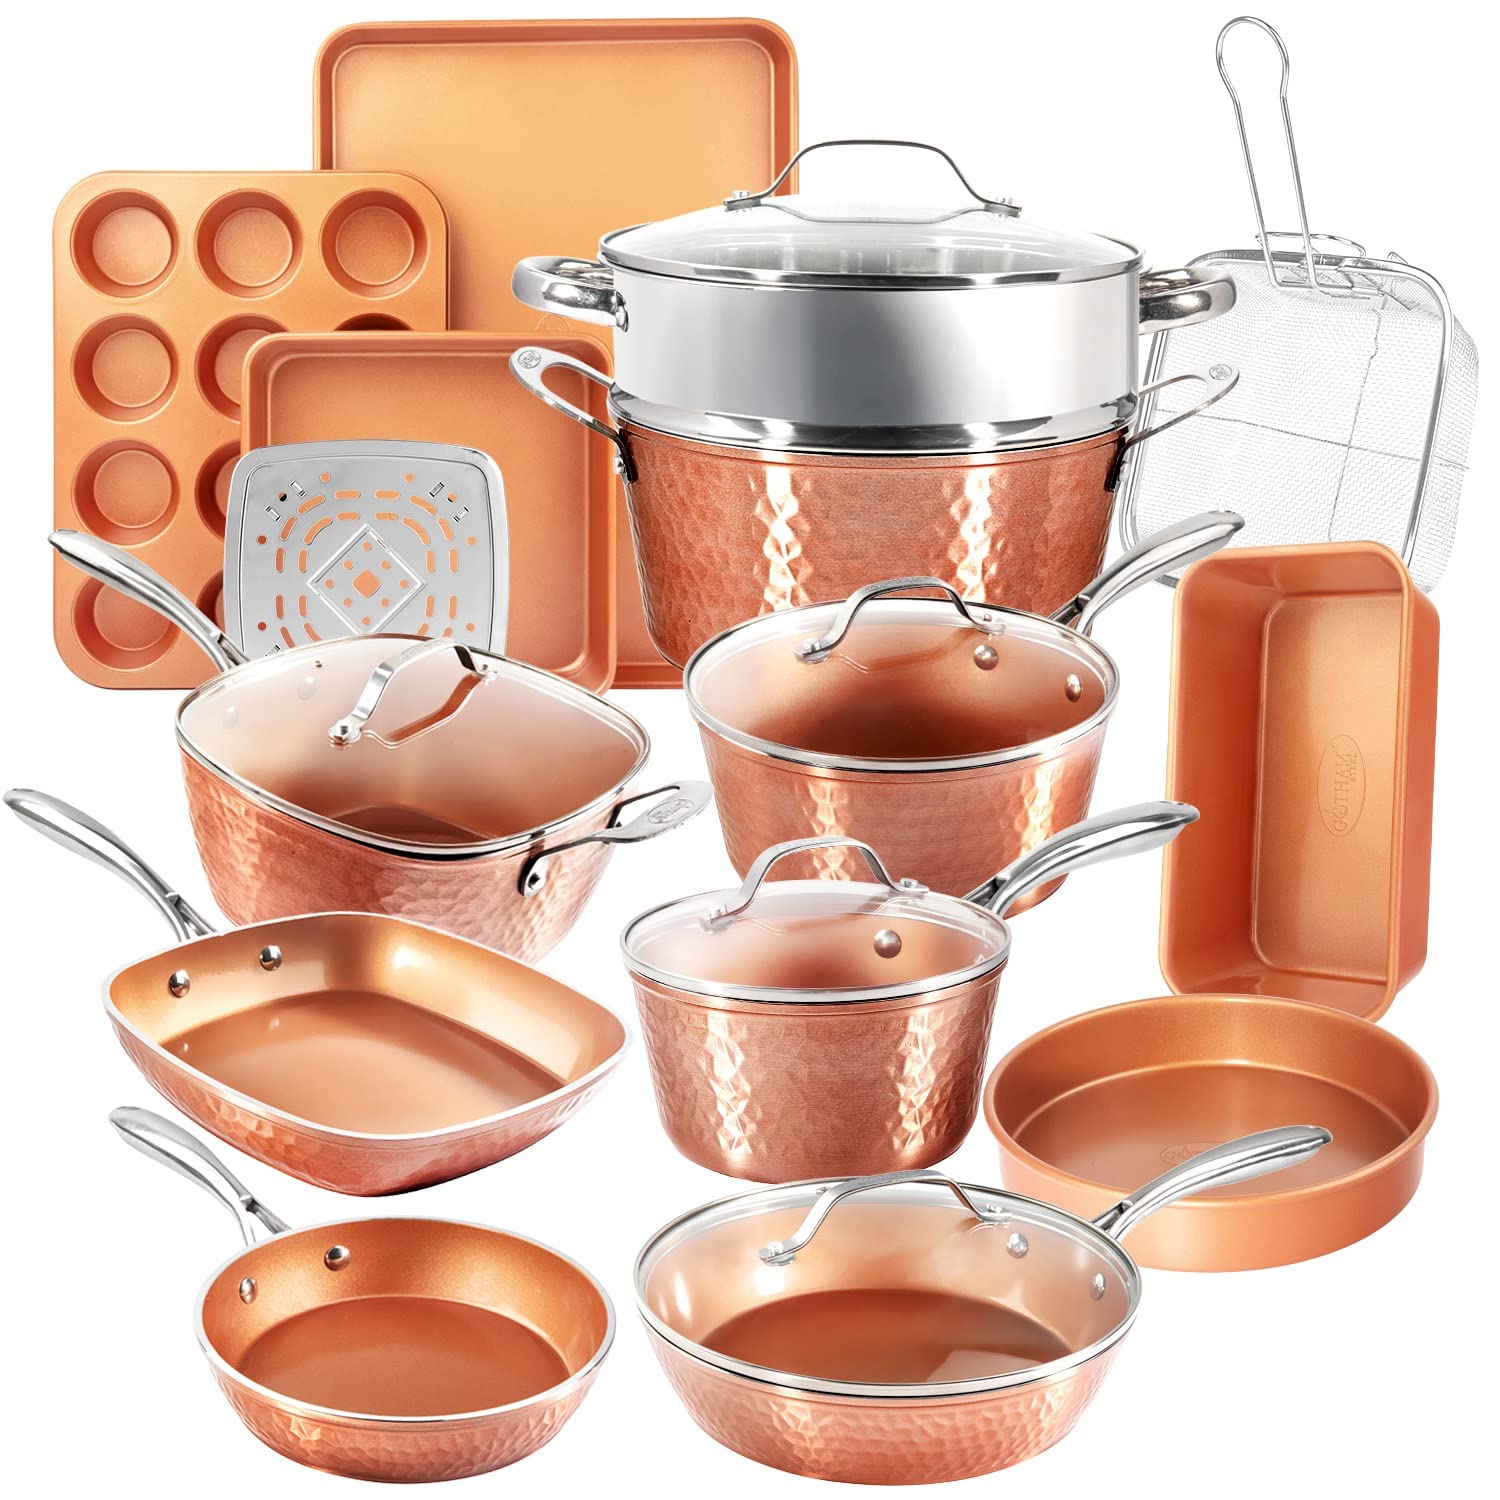 Gotham Steel Hammered Copper Collection – 20 Piece Premium Cookware & Bakeware Set